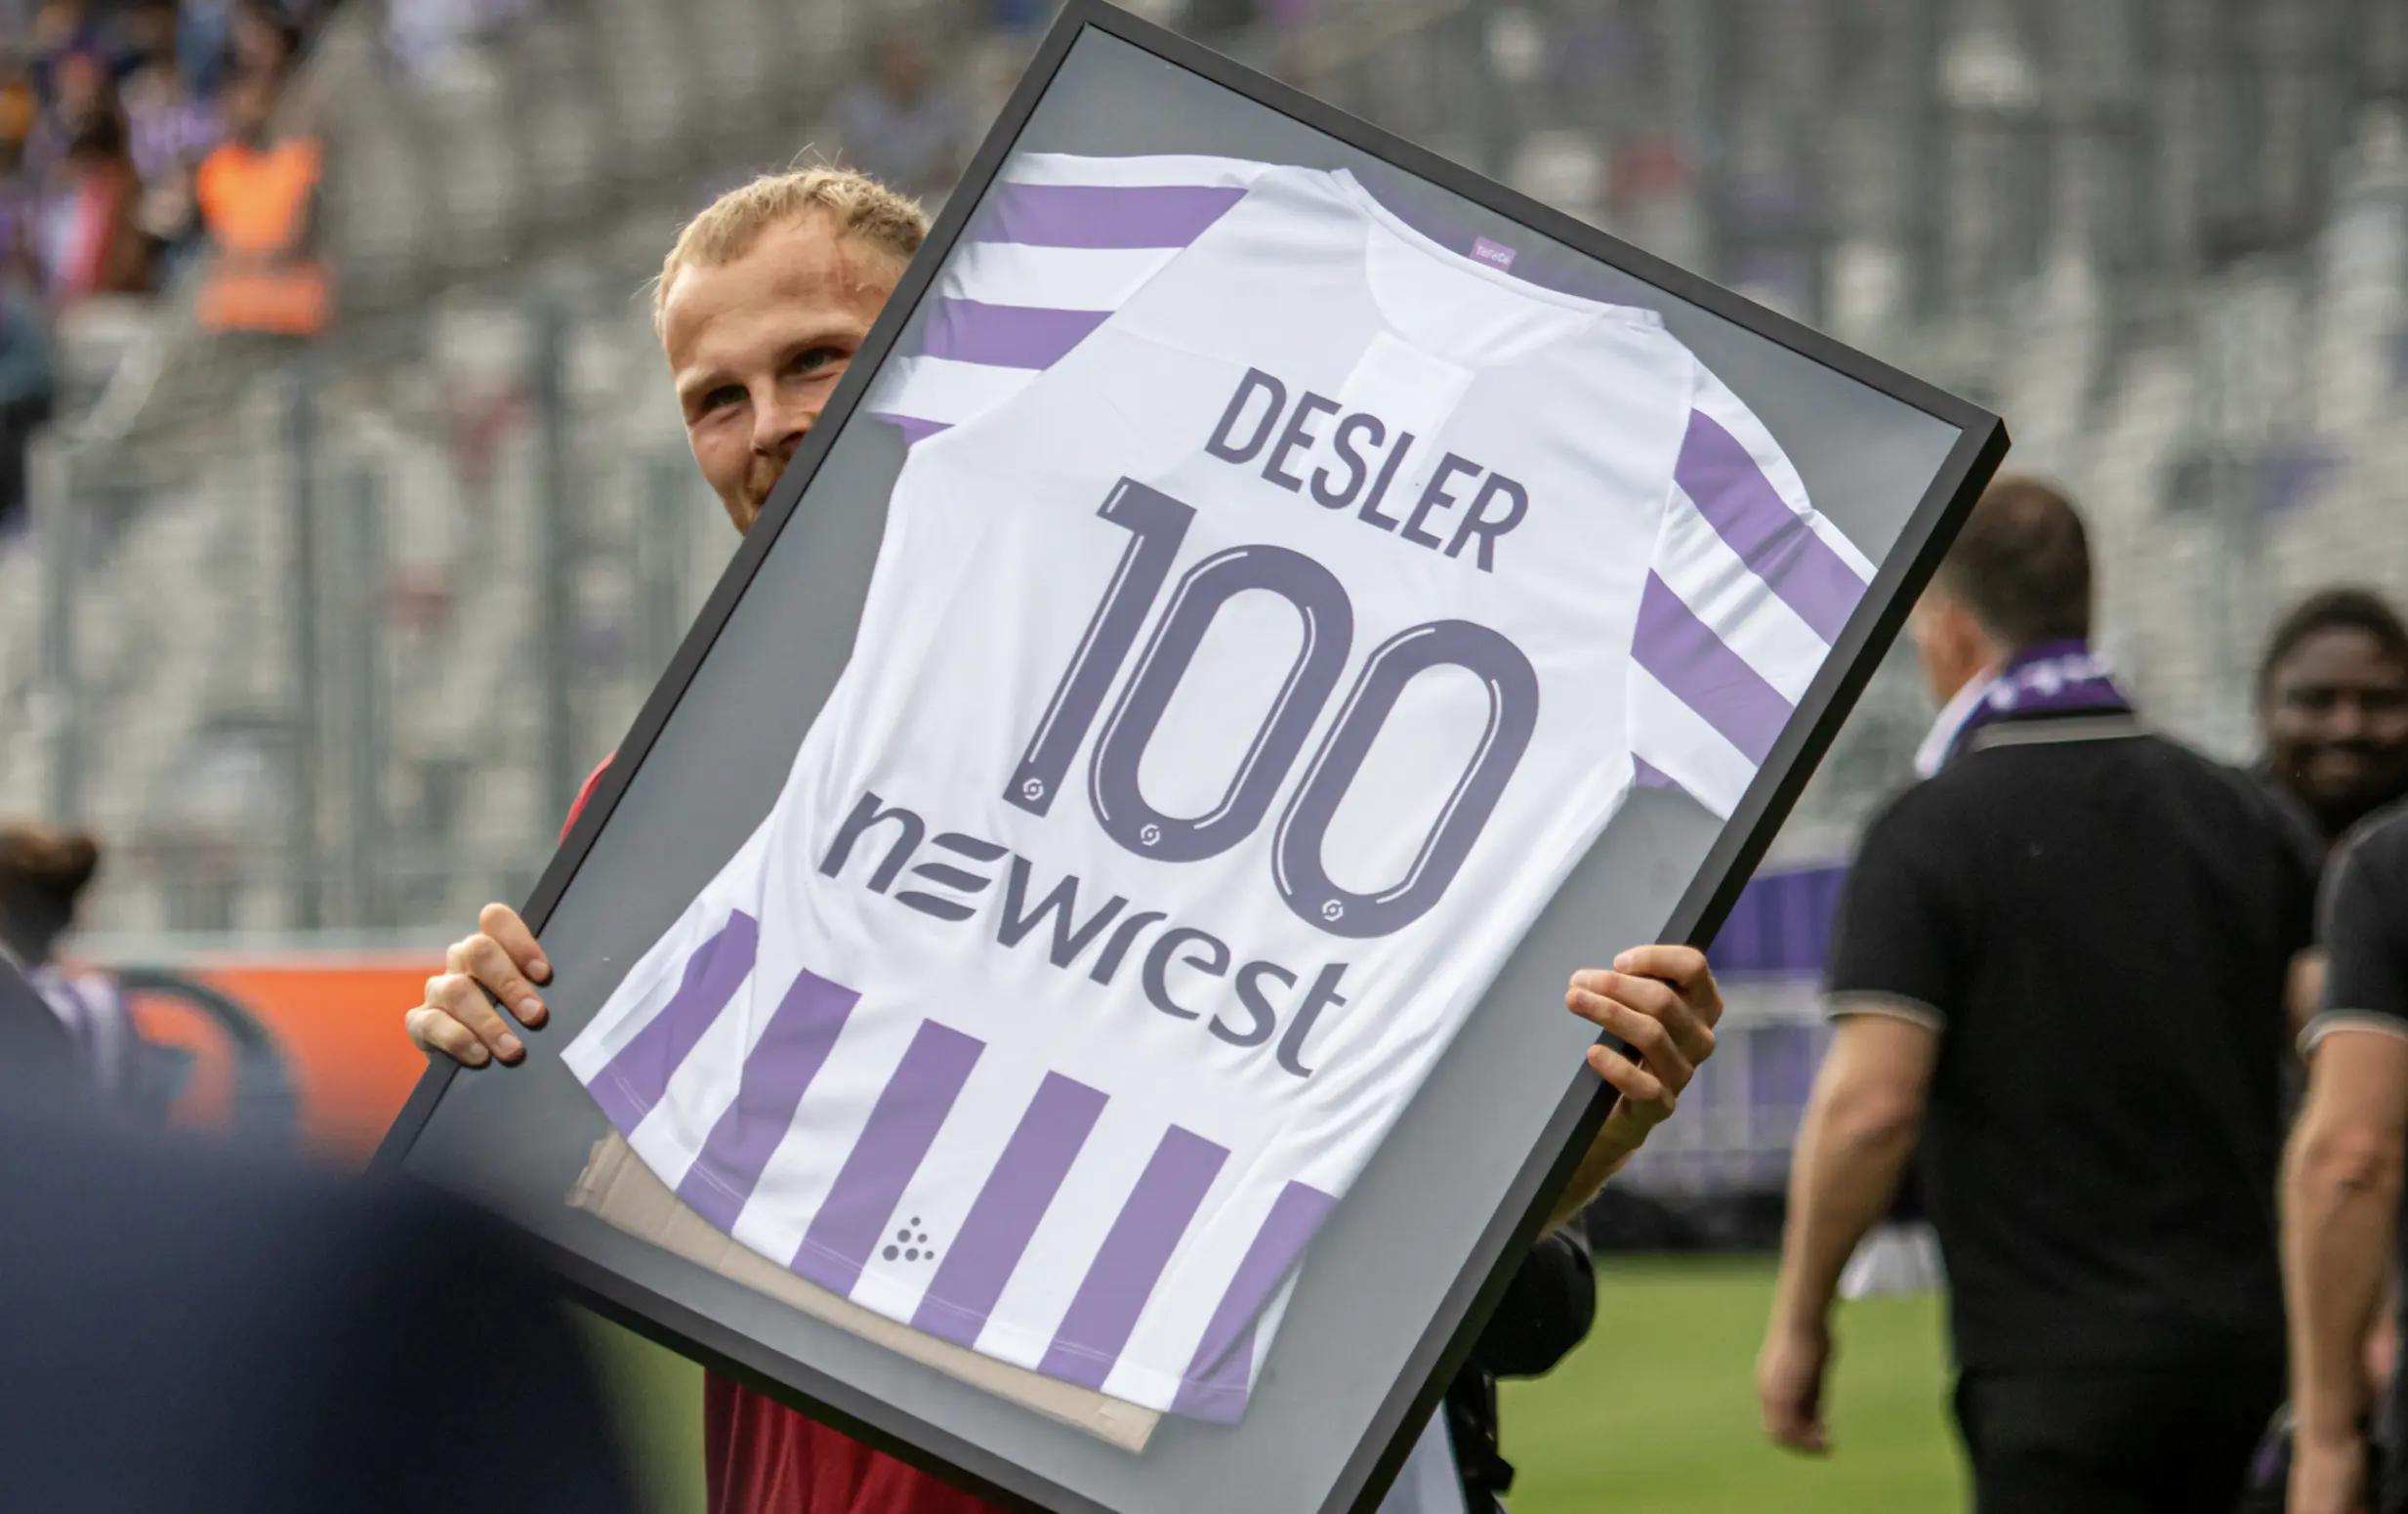 Mikkel Desler 100